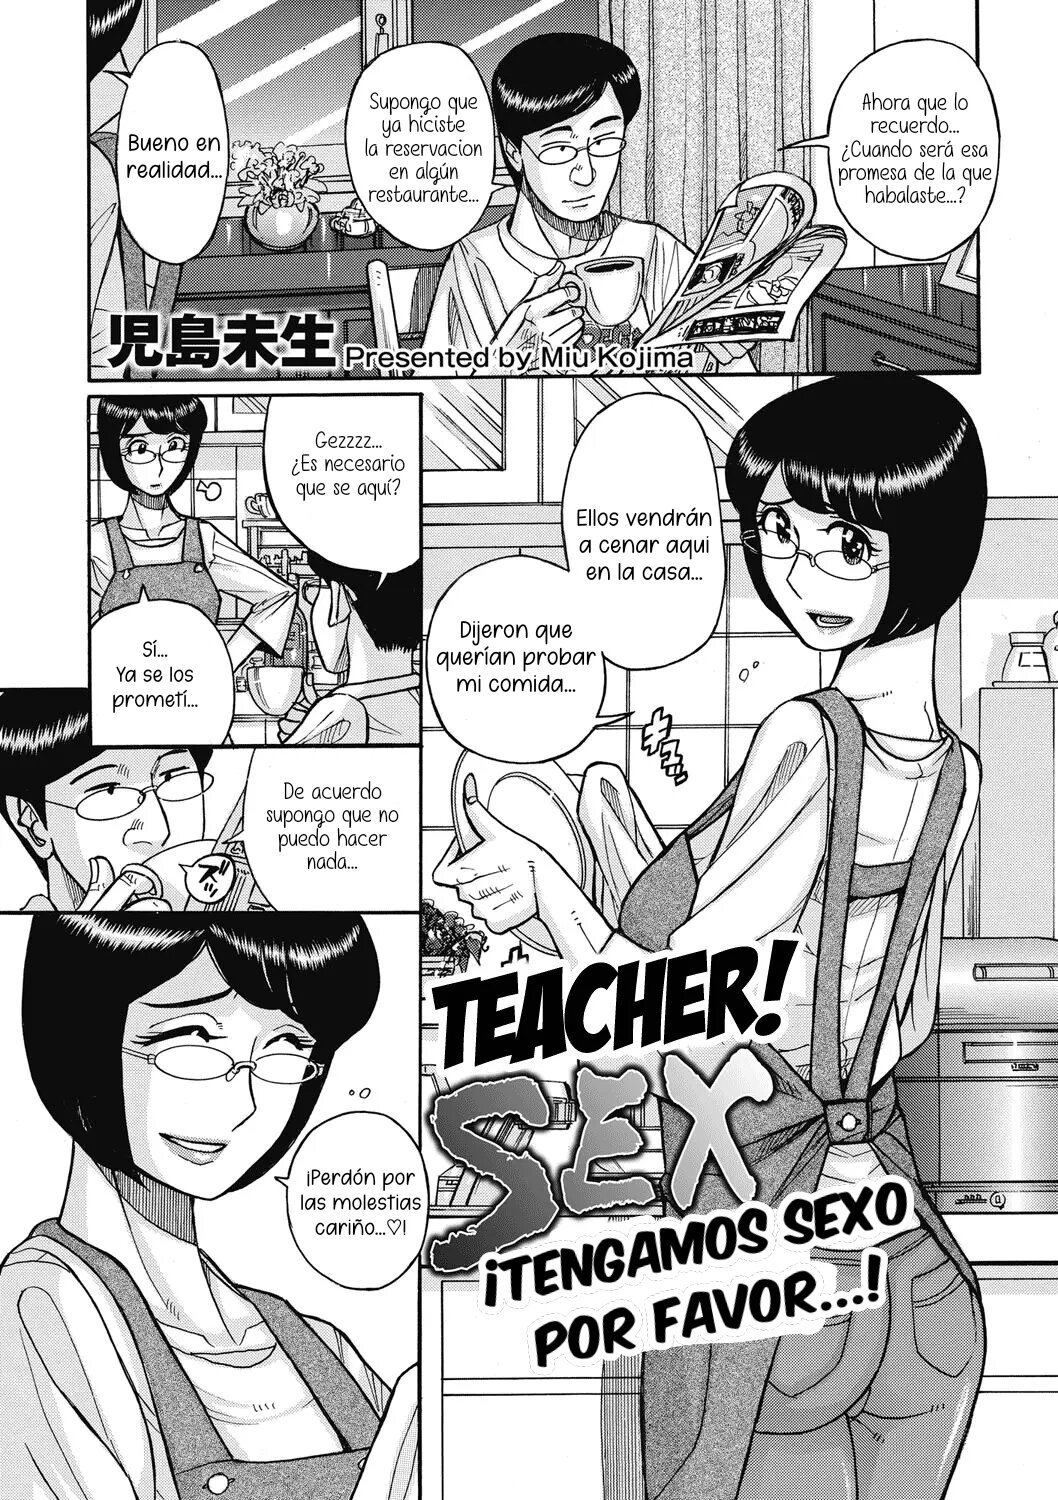 Teacher Sex - 0